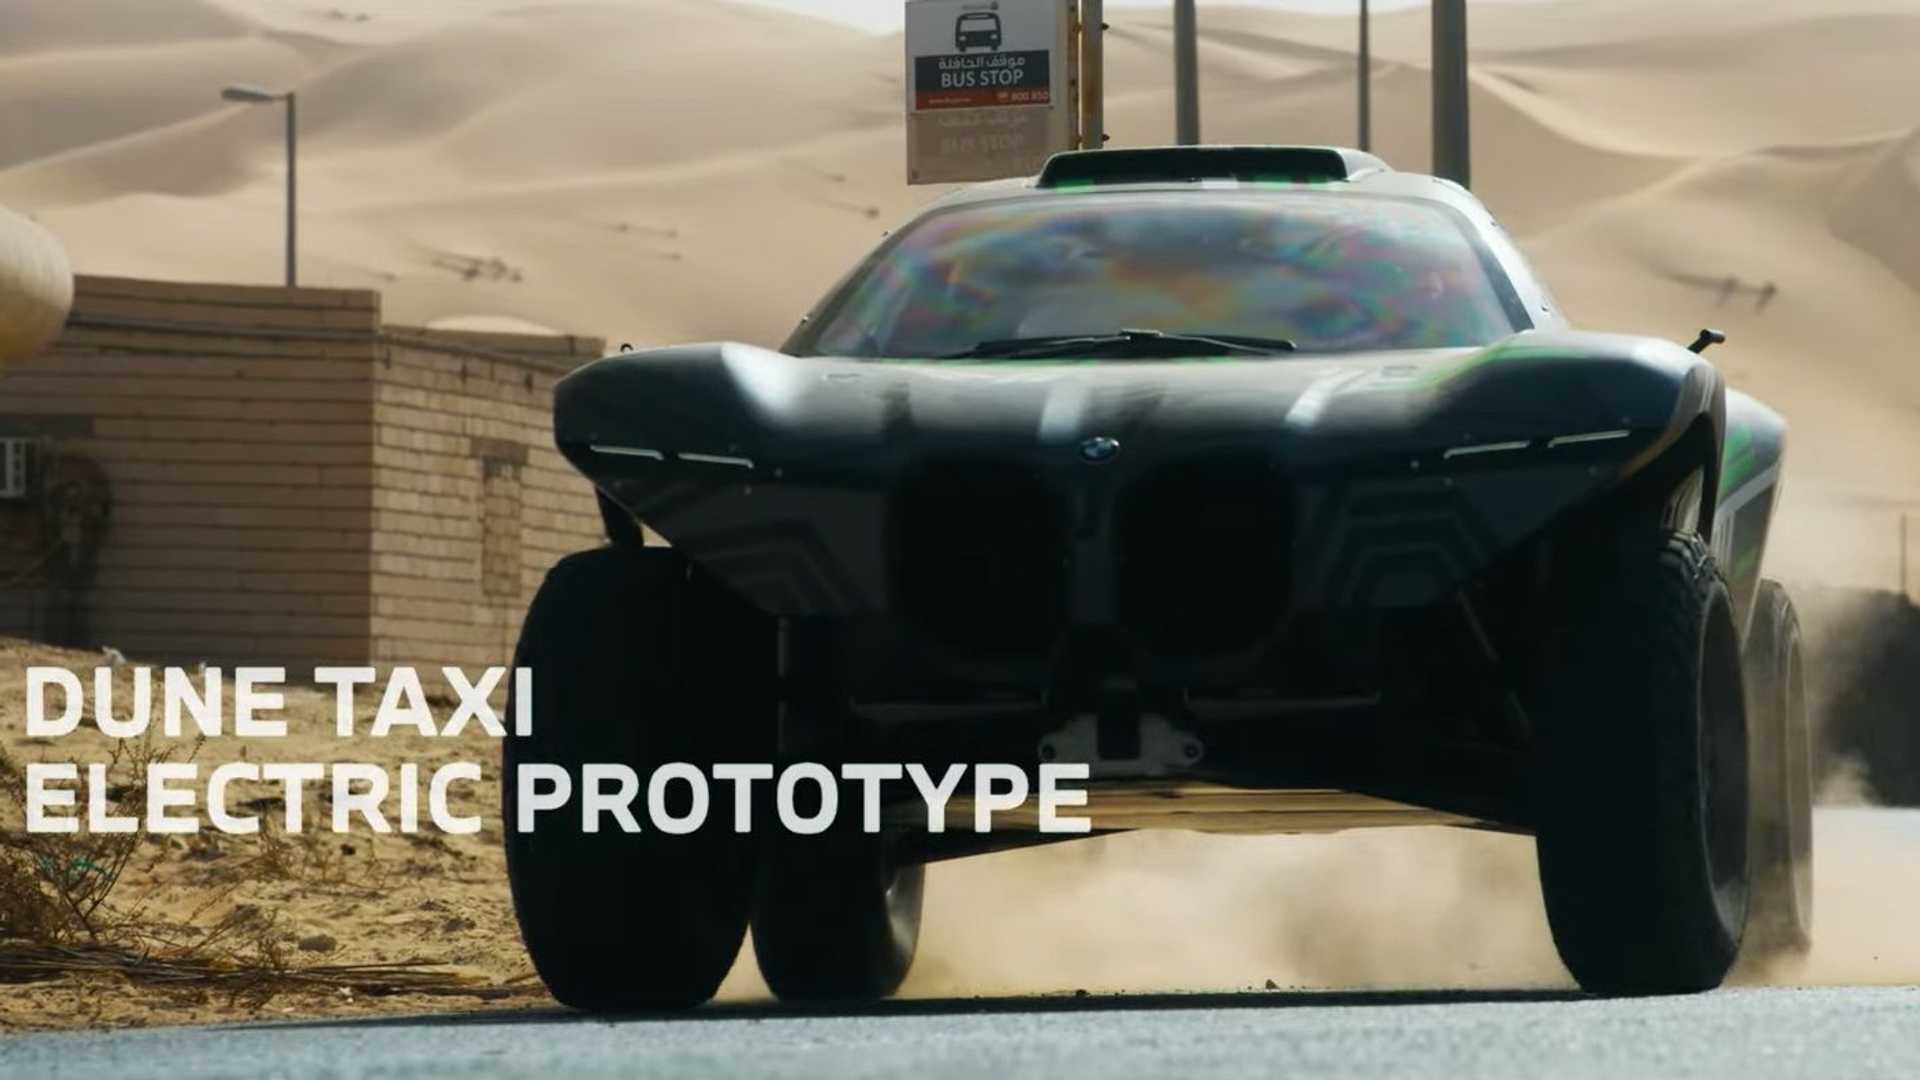 بي ام دبليو الشرق الأوسط تكشف عن سيارة Dune Taxi الجديدة للراليات 16